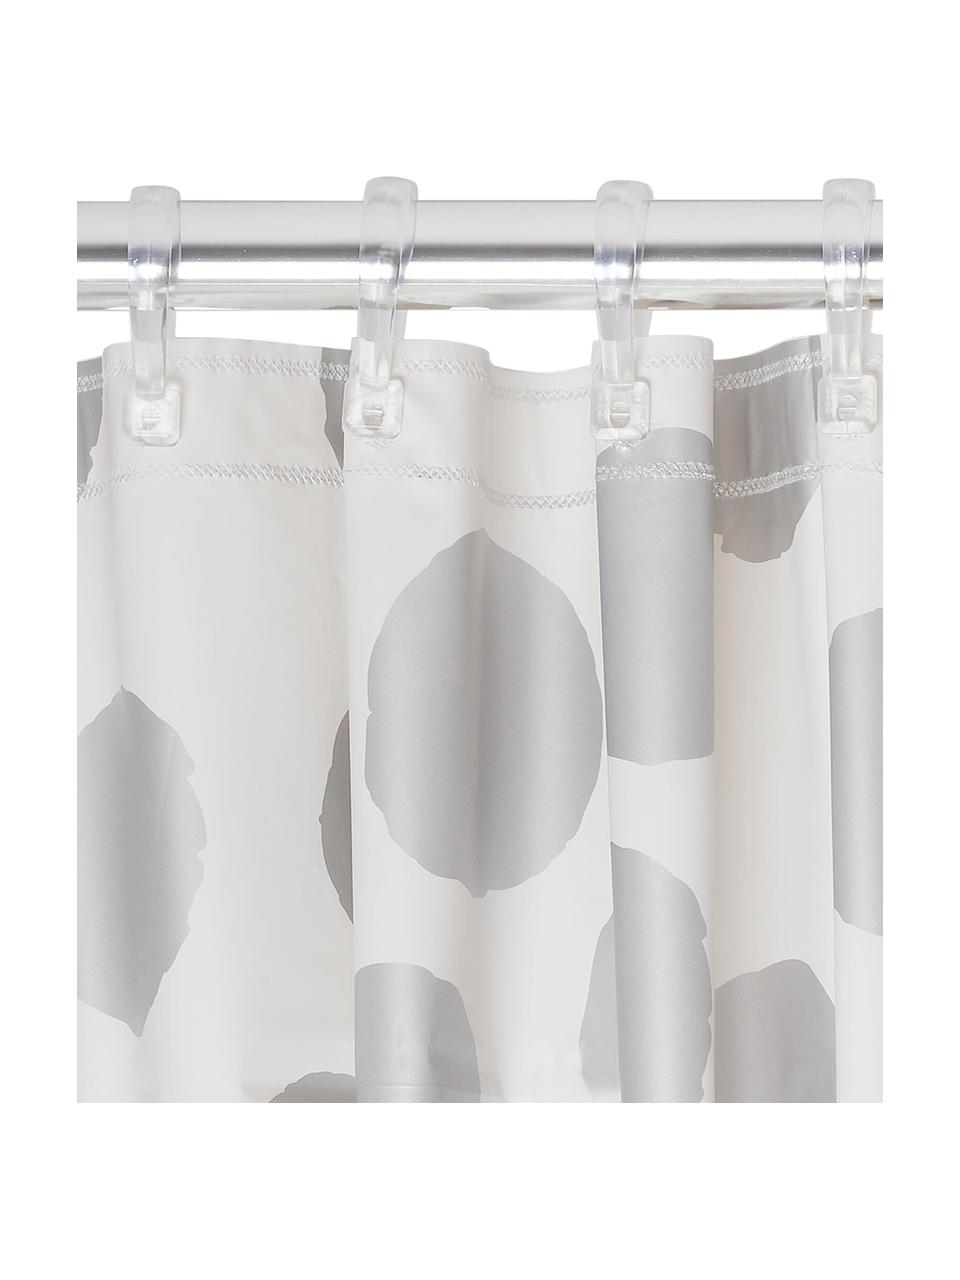 Rideau de douche à pois argentés Spots, Plastique (PEVA), étanche, Blanc, couleur argentée, larg. 180 x long. 200 cm